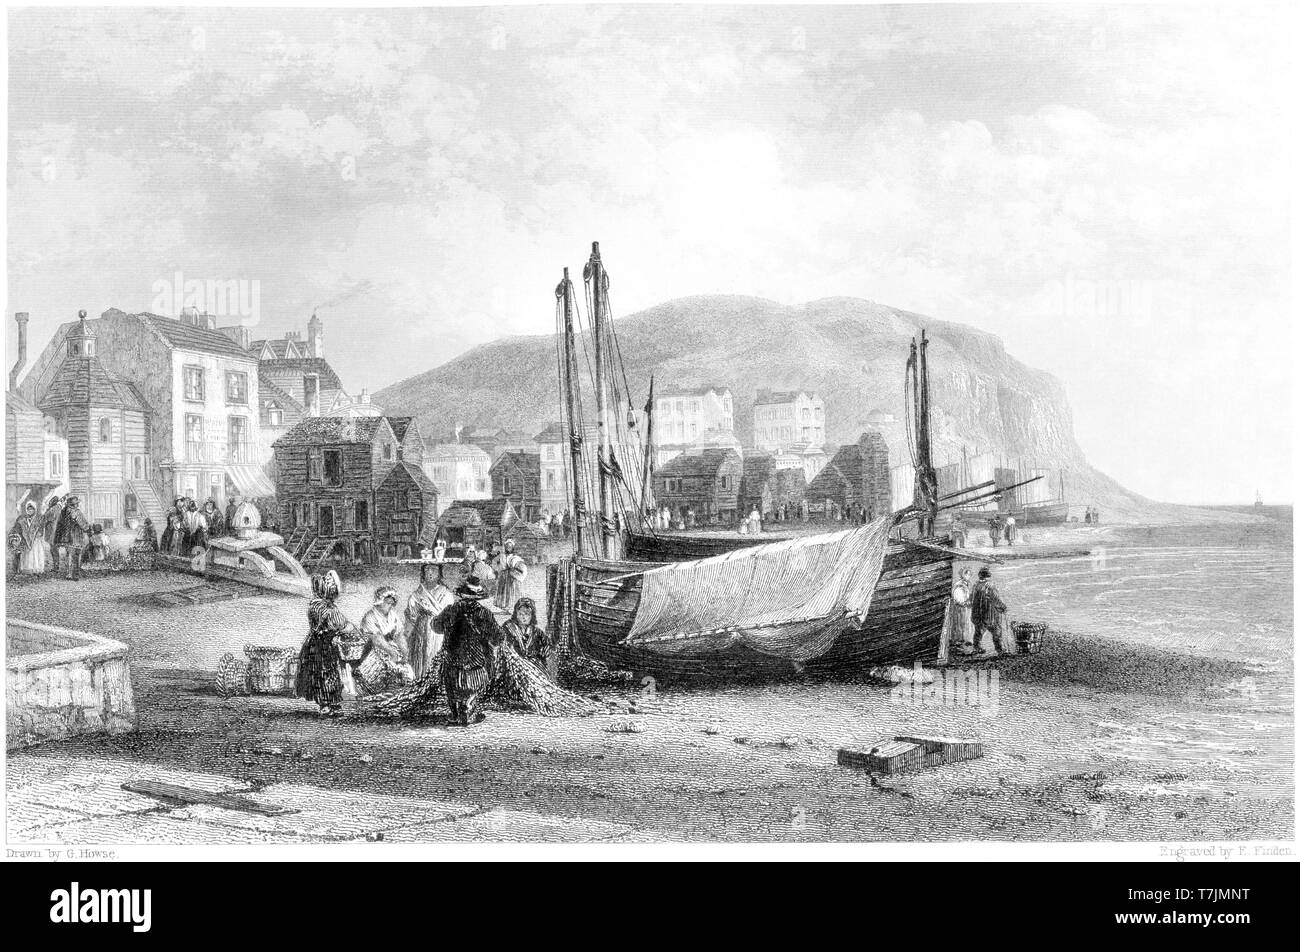 Une gravure de Hastings - Vue sur la plage numérisées à haute résolution à partir d'un livre publié en 1842. Croyait libres de droit. Banque D'Images